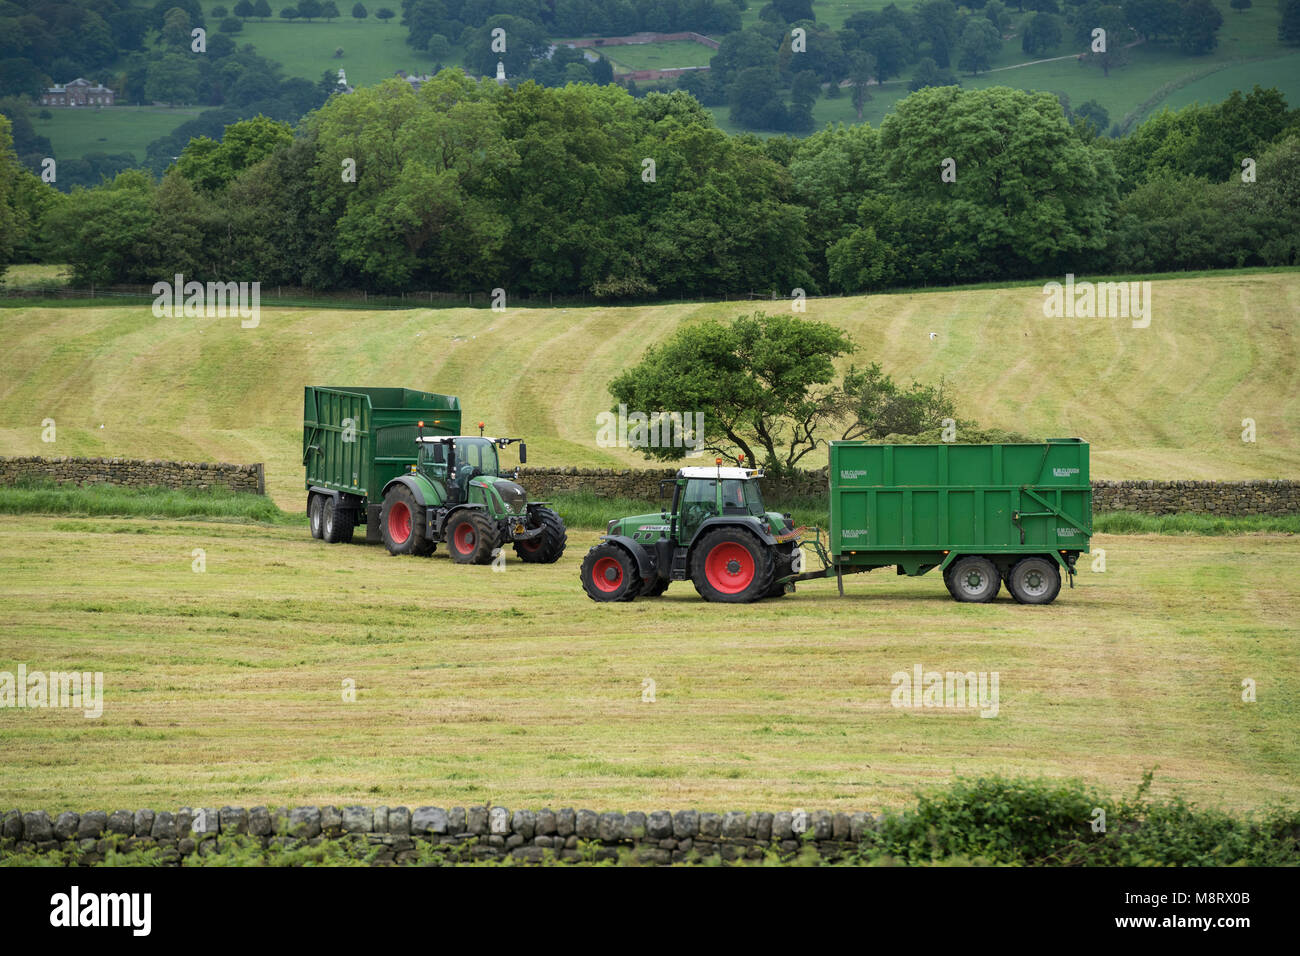 Trabajar en la granja de campo, 2 verde tractores Fendt están tirando de remolques - 1 está cargada con cortar hierba para ensilado y 1 está vacía - West Yorkshire, Inglaterra, Reino Unido. Foto de stock